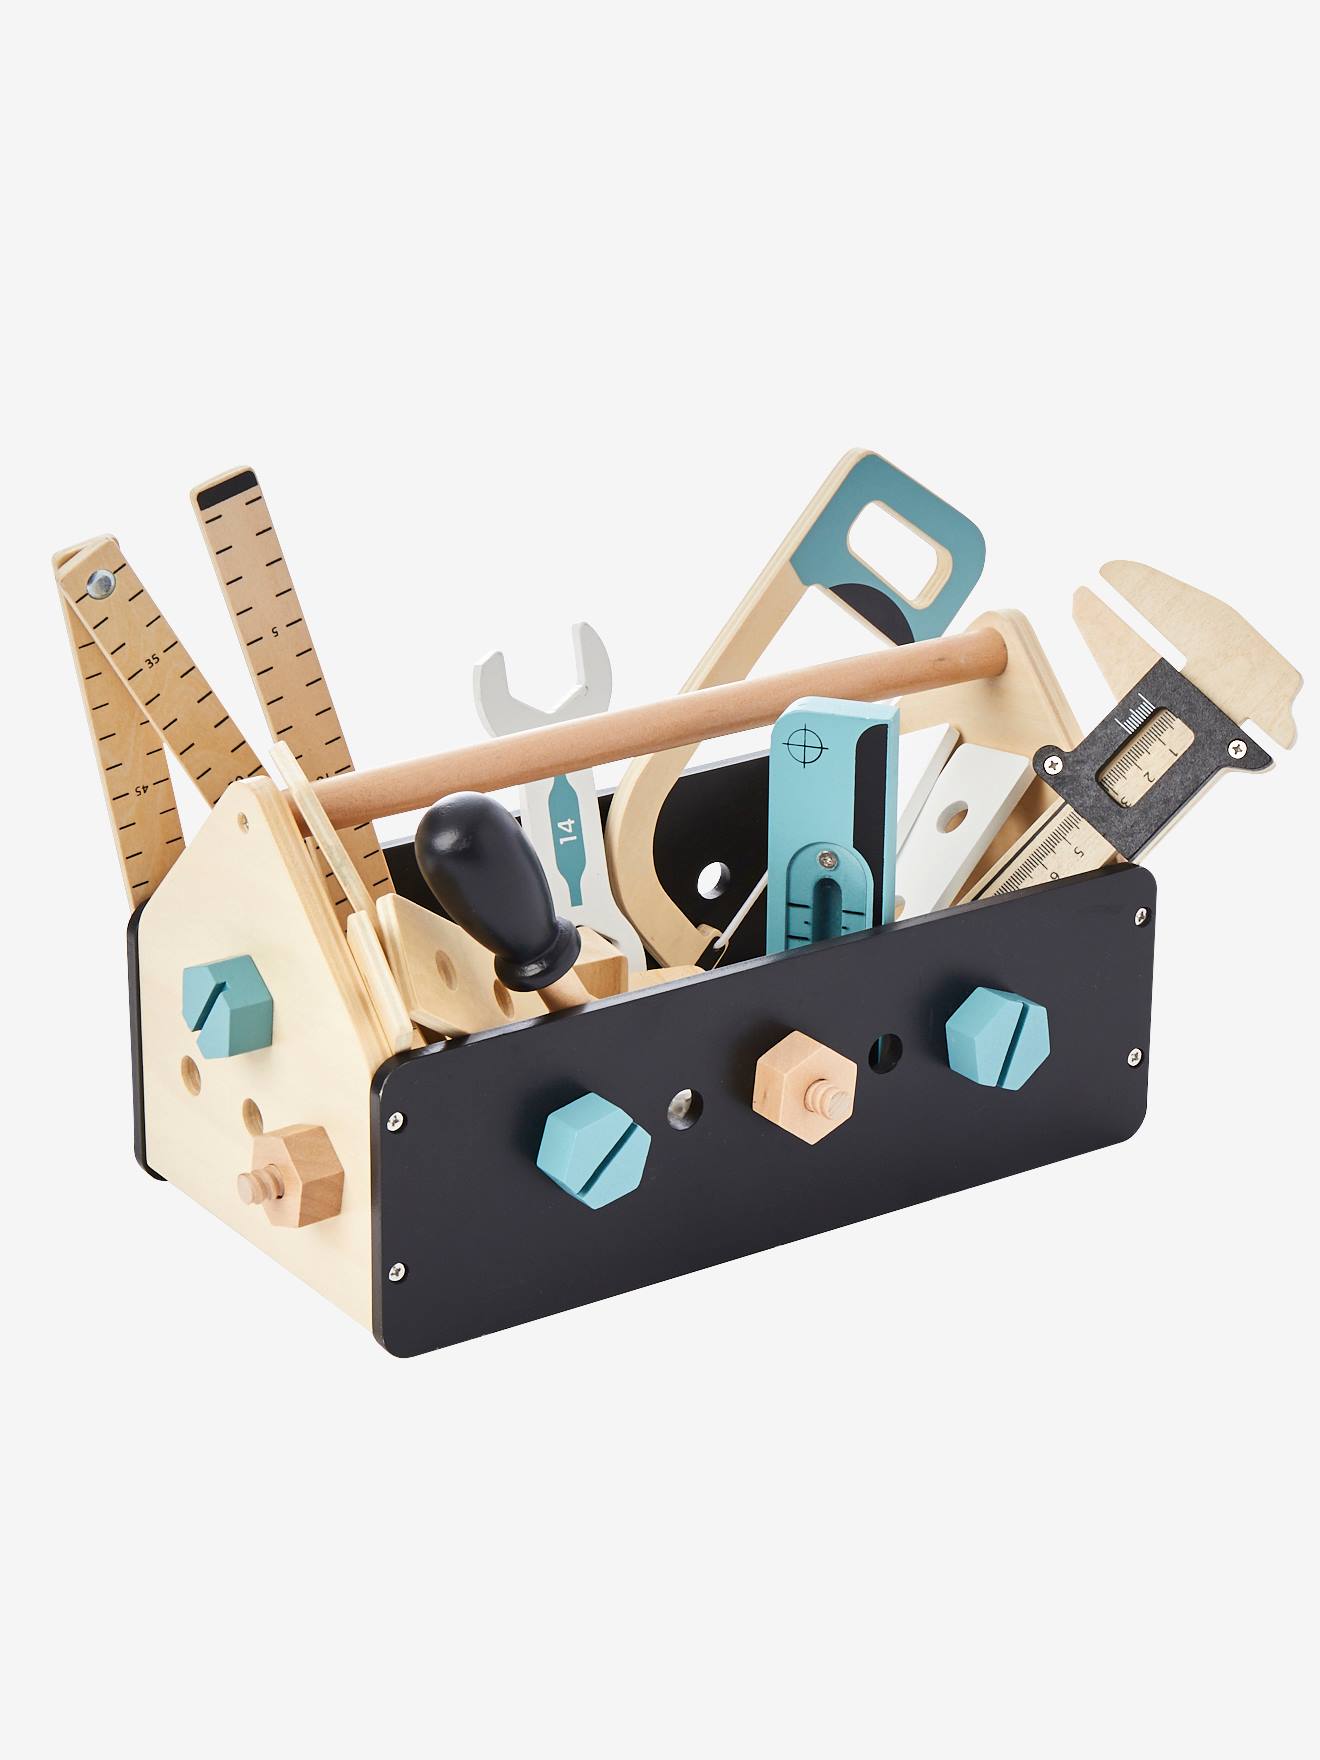 Caixa de ferramentas para construção em madeira sem cor